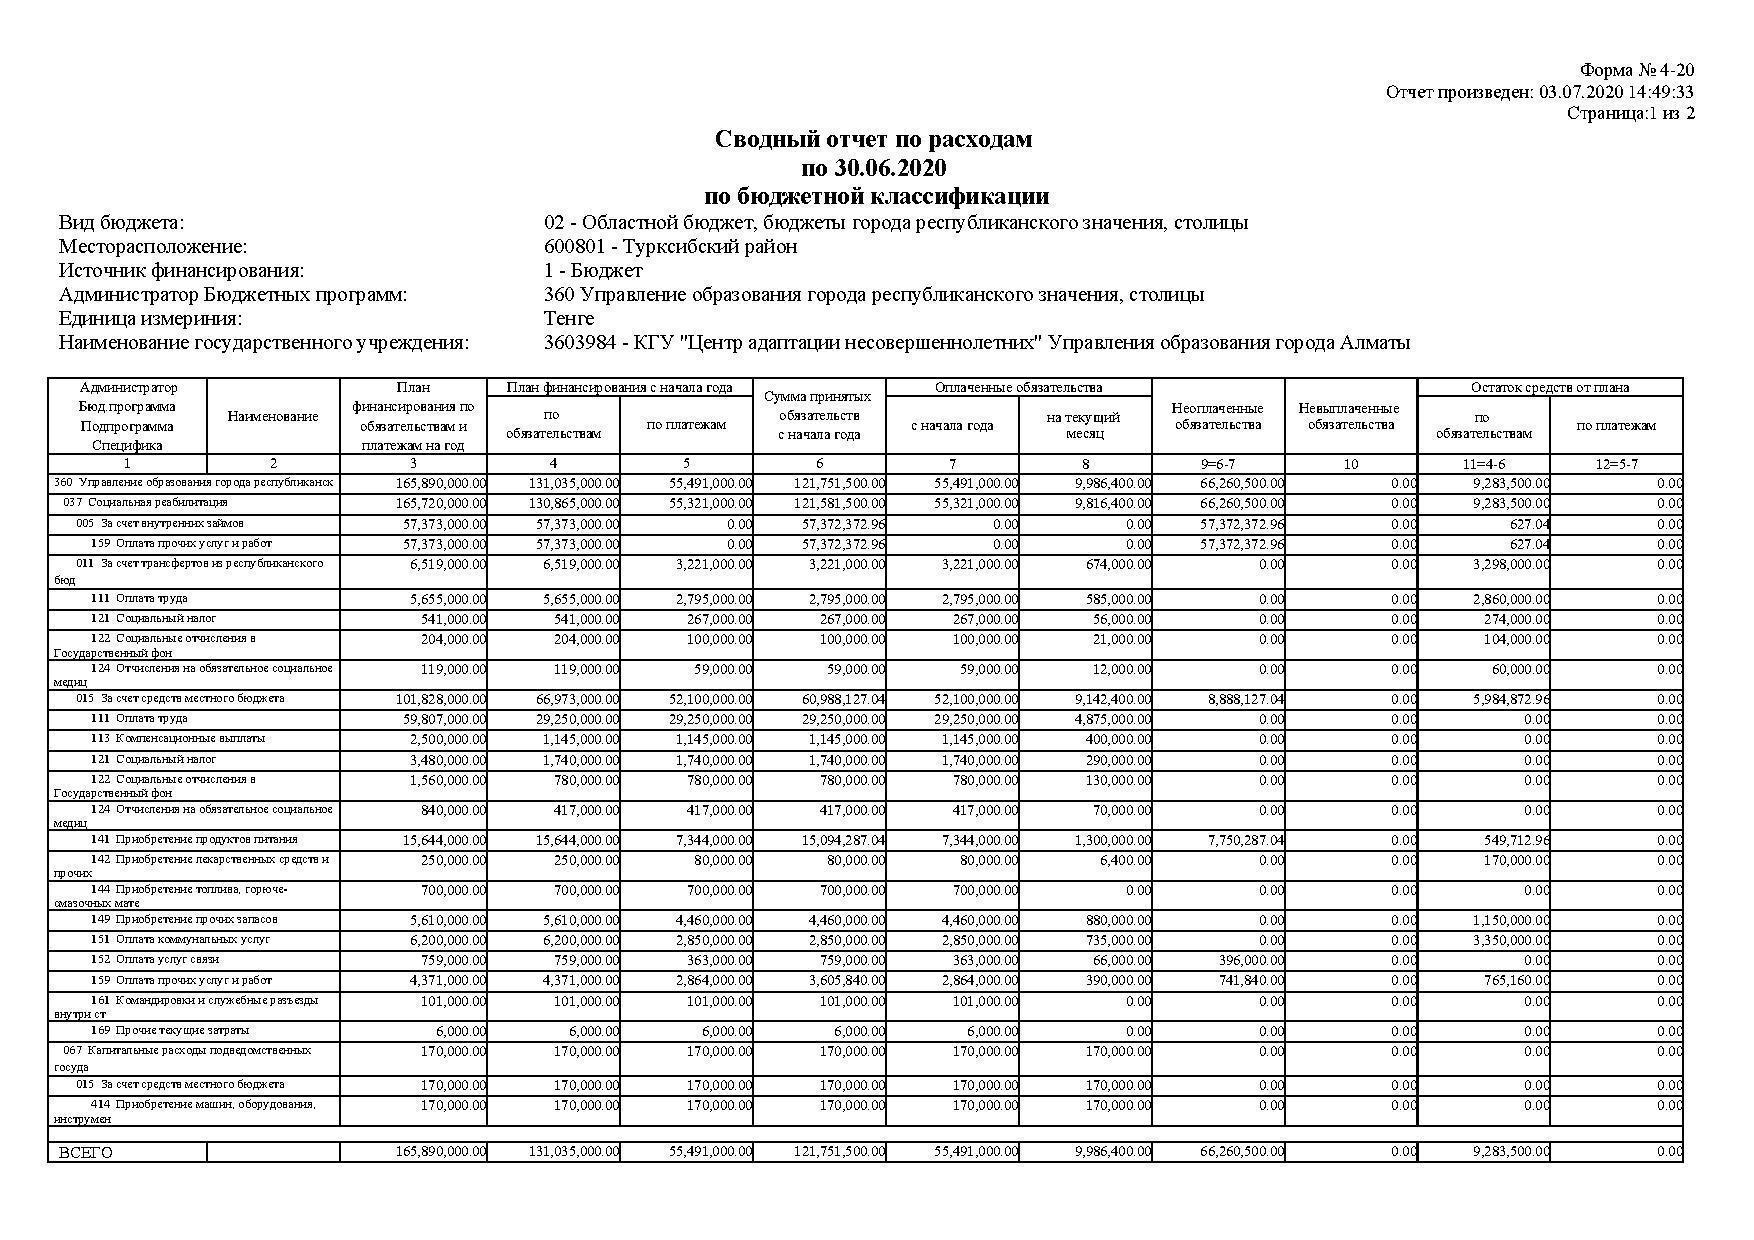 Сводный отчет по расходам по 31.06.2020 по бюджетной классификации